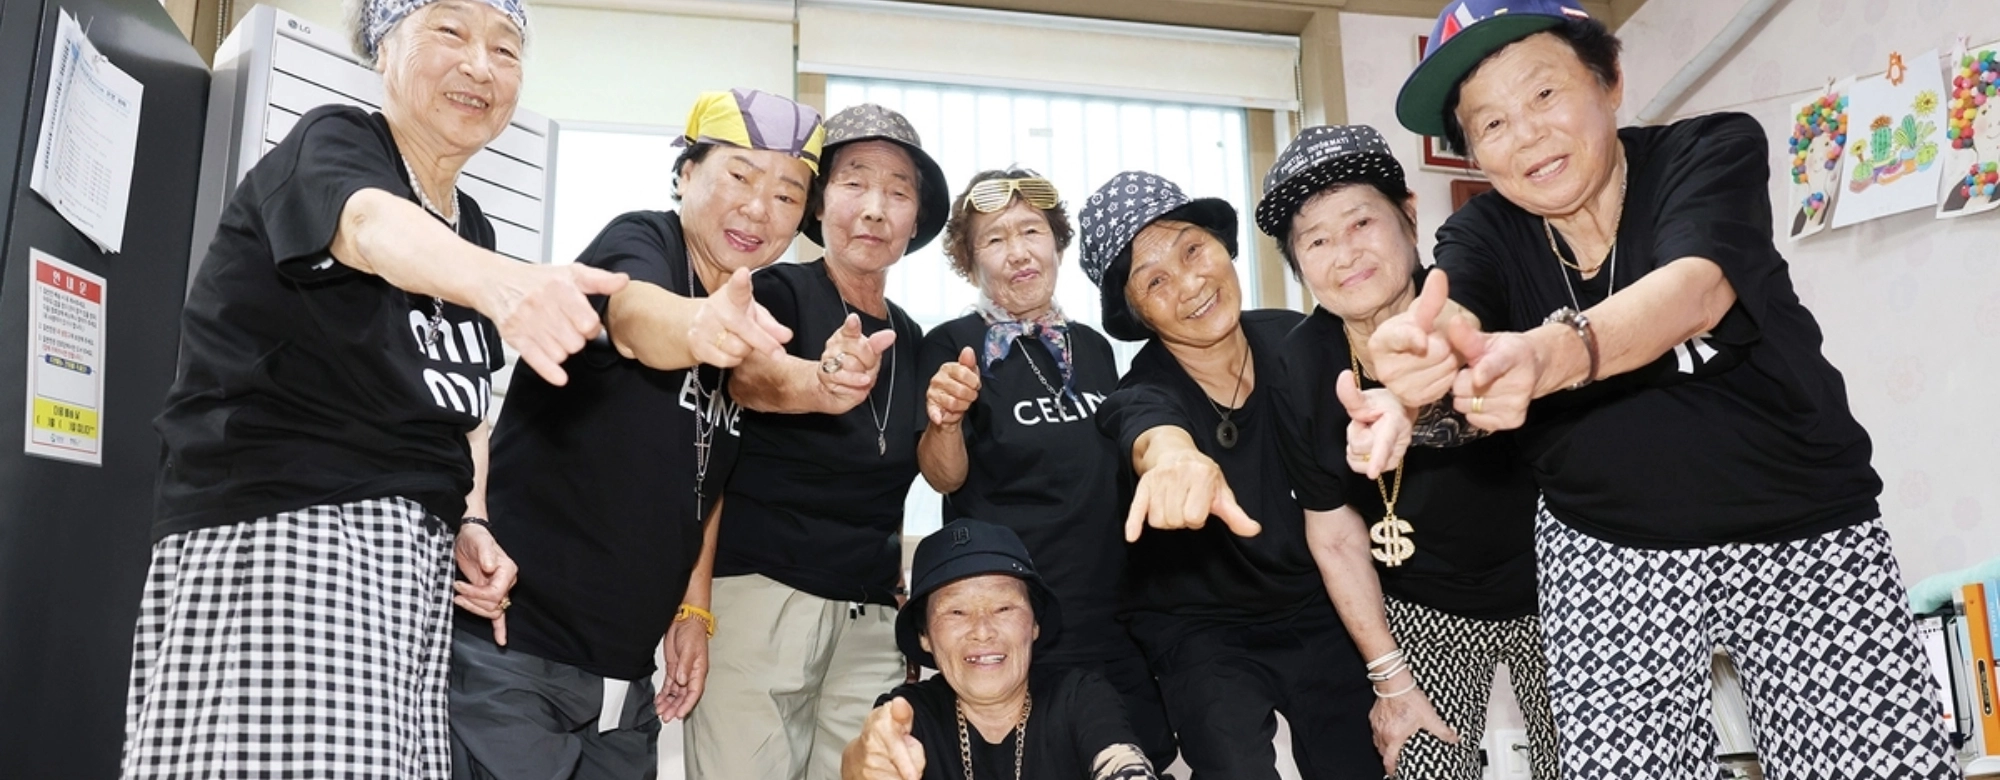 세계가 주목 80대 할머니 래퍼…“한국인 K팝 유전자 증명” 